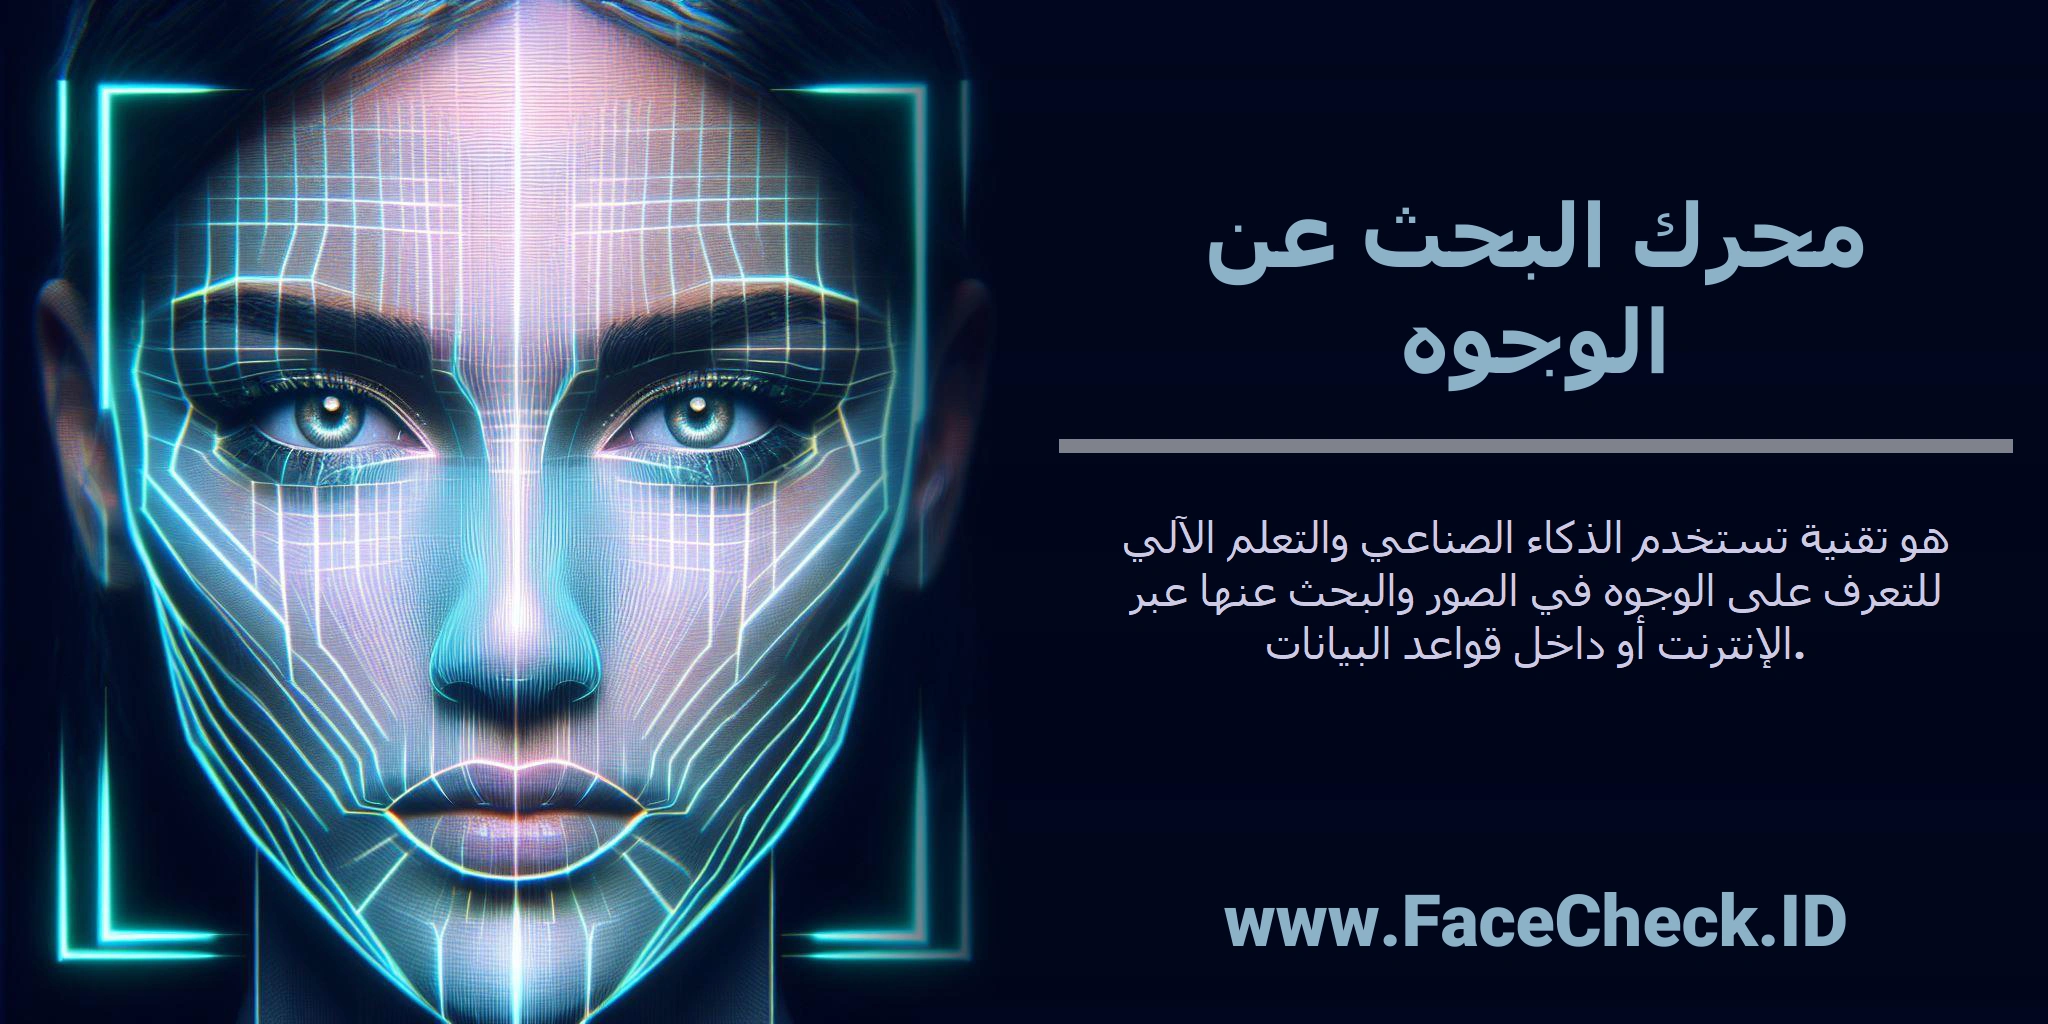 <b>محرك البحث عن الوجوه</b> هو تقنية تستخدم الذكاء الصناعي والتعلم الآلي للتعرف على الوجوه في الصور والبحث عنها عبر الإنترنت أو داخل قواعد البيانات.